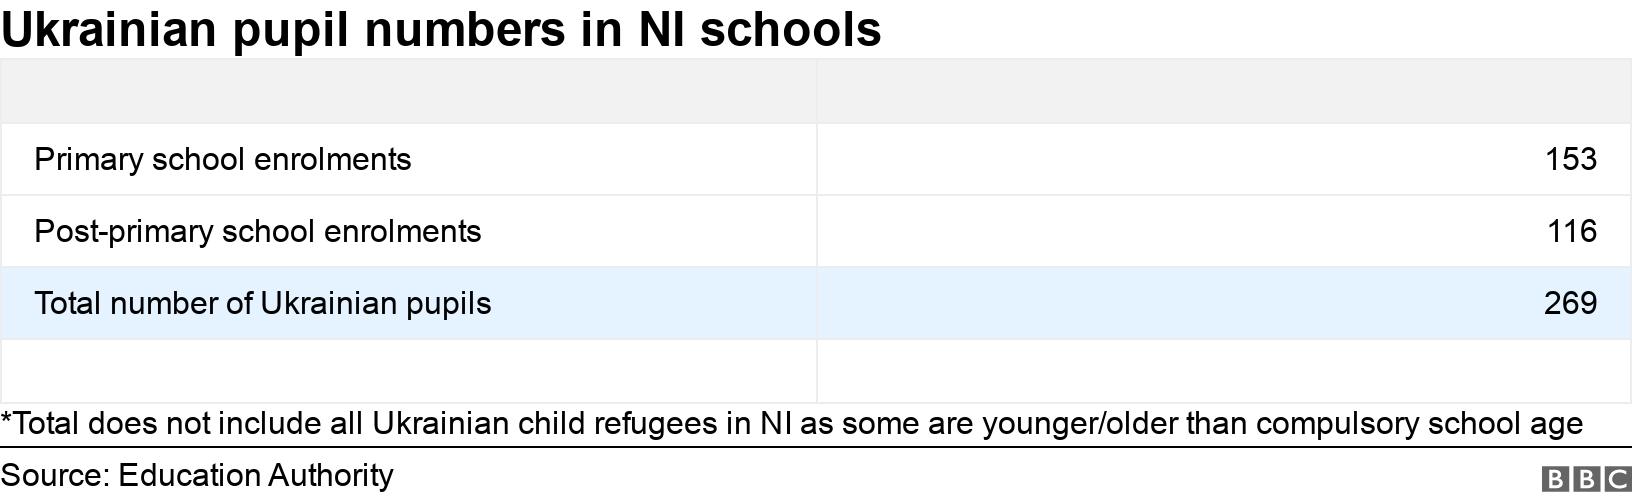 Ukrainische Schülerzahlen an NI-Schulen. . *Insgesamt sind nicht alle ukrainischen Flüchtlingskinder in NI enthalten, da einige jünger/älter als das Pflichtschulalter sind.